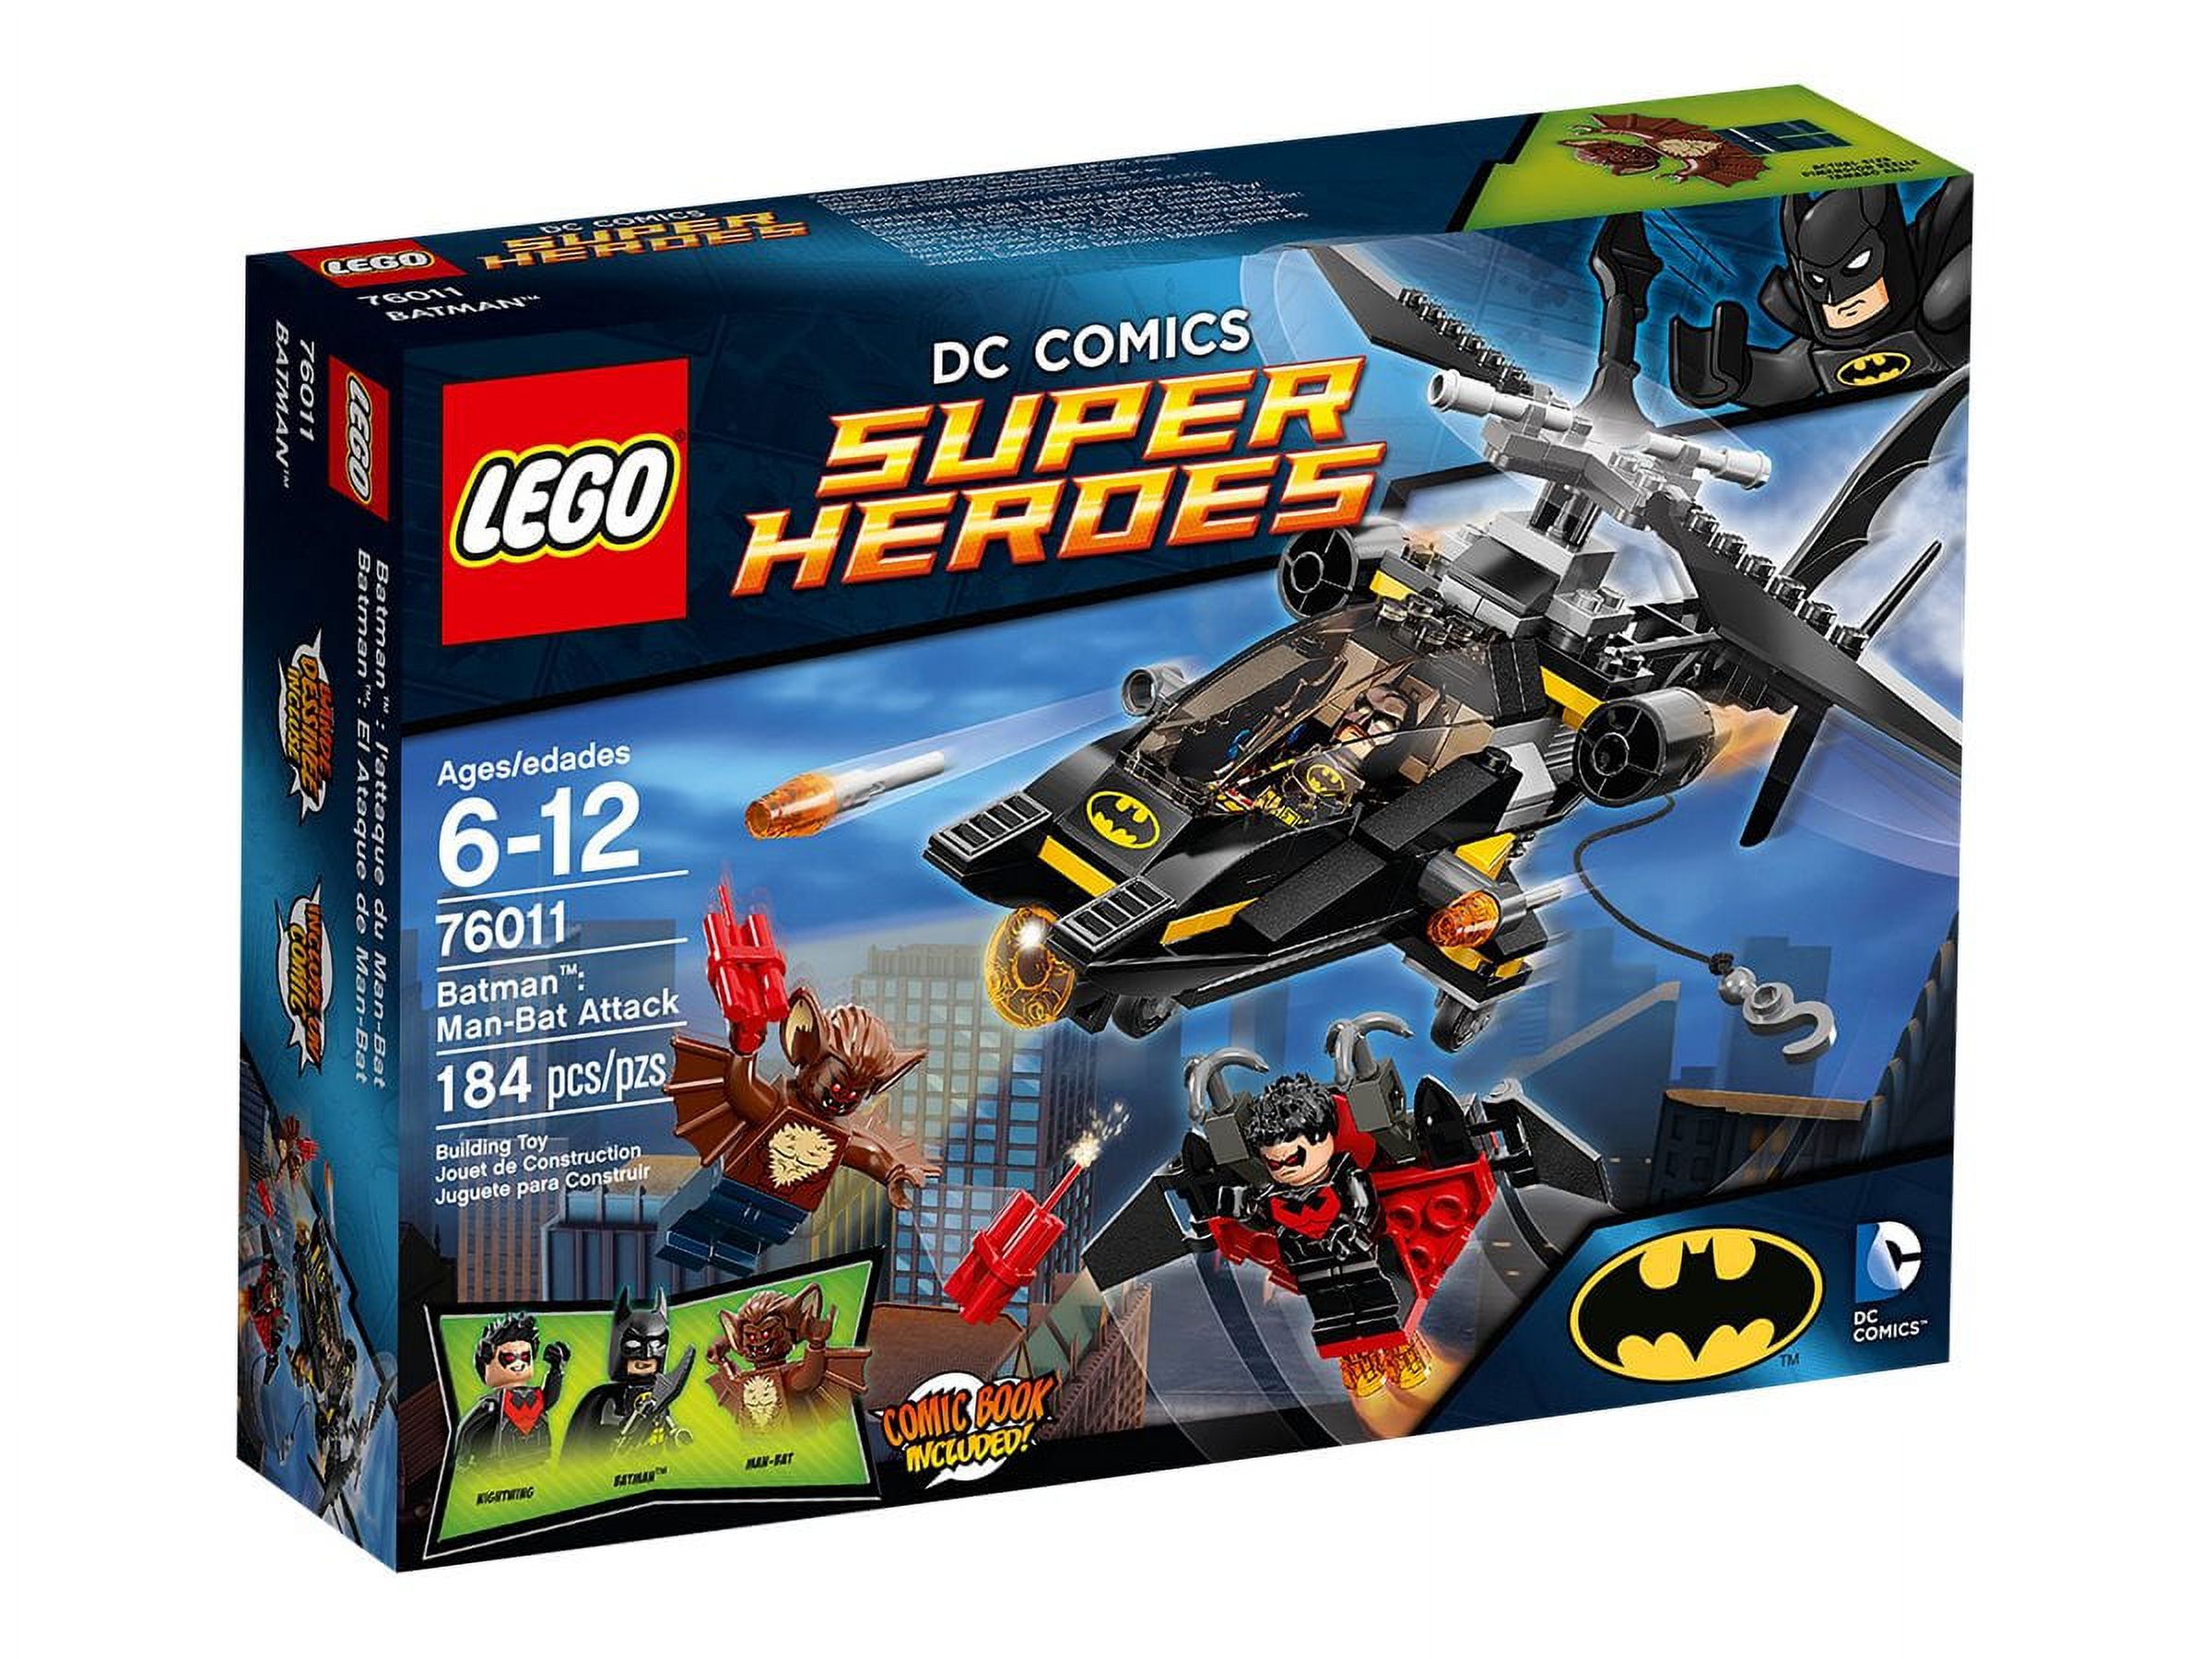 LEGO DC Comics Super Heroes 76011 - Batman: Man-Bat Attack - image 1 of 3